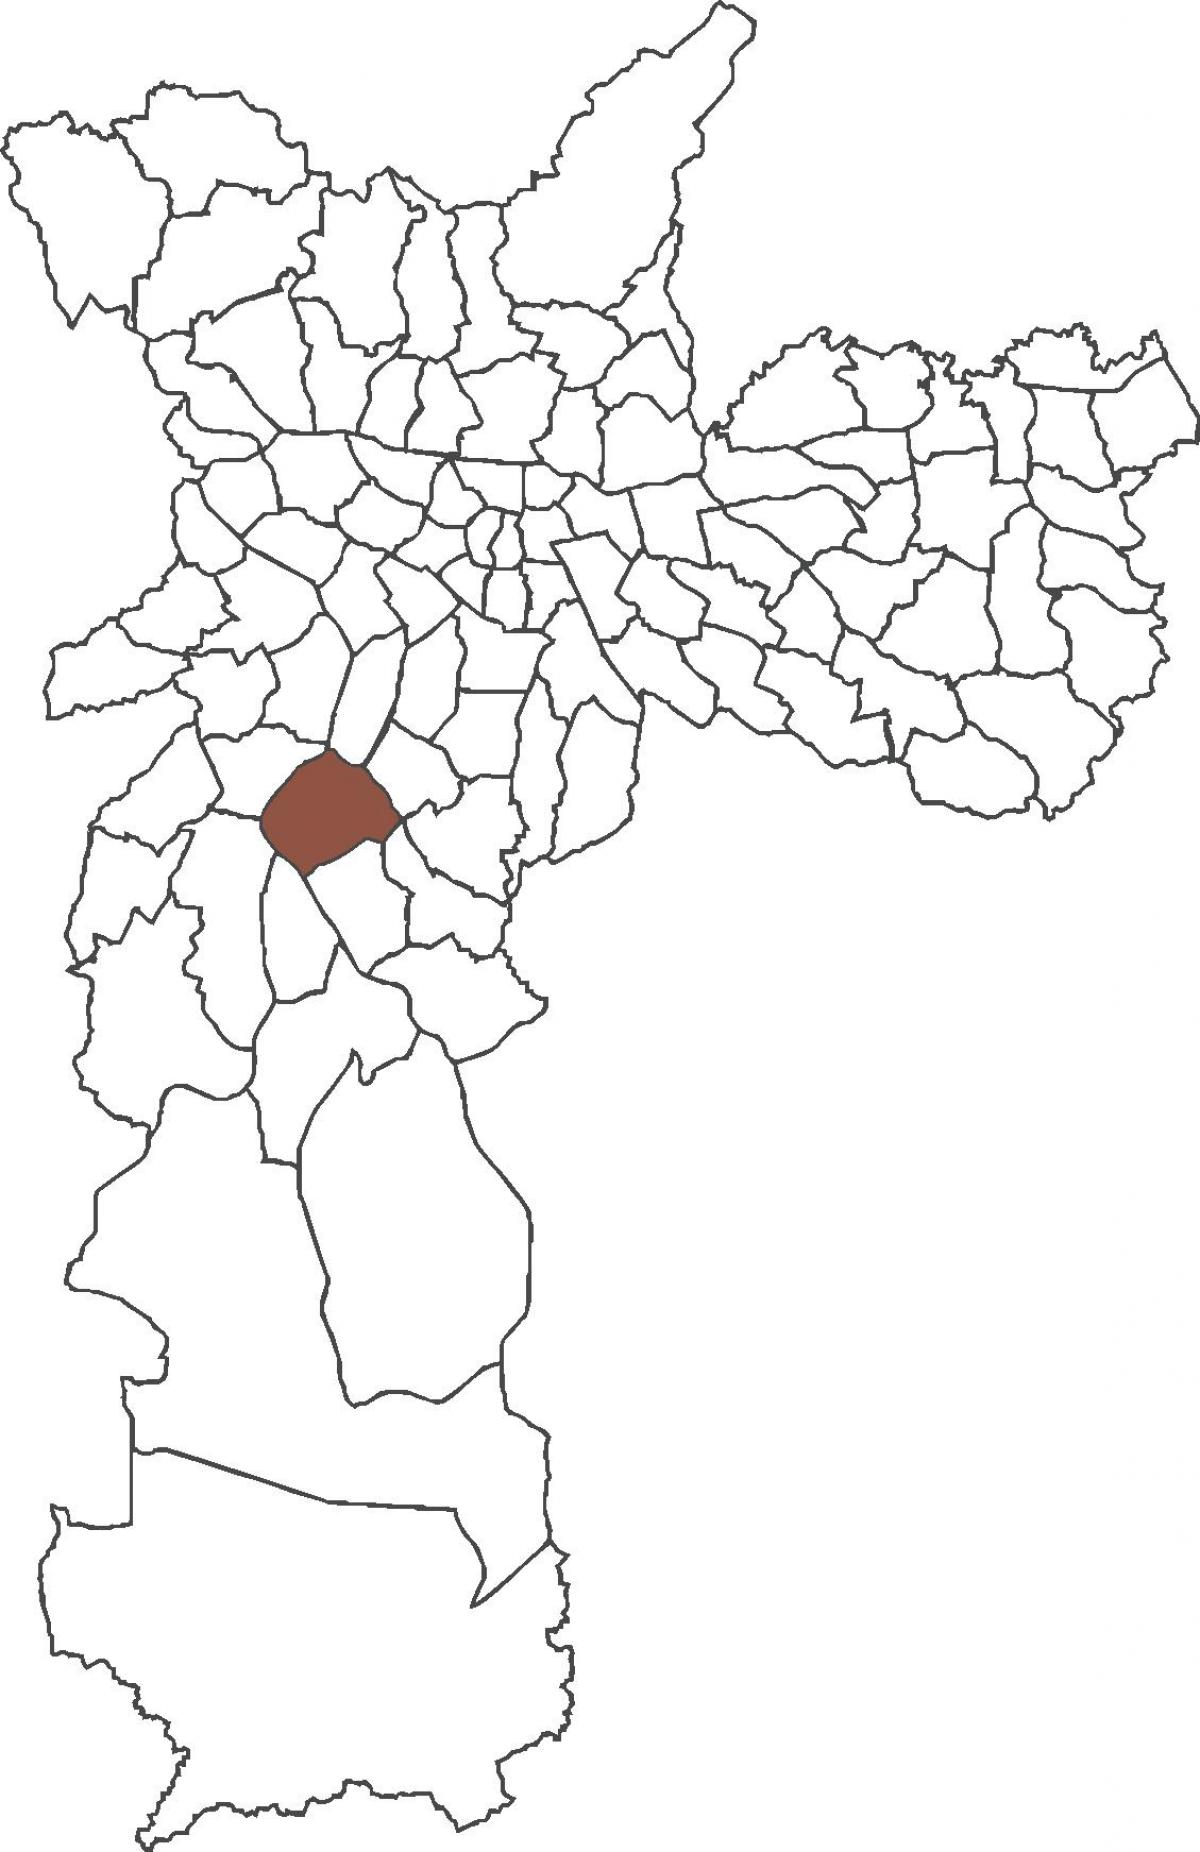 মানচিত্র এর সান্টো Amaro জেলা